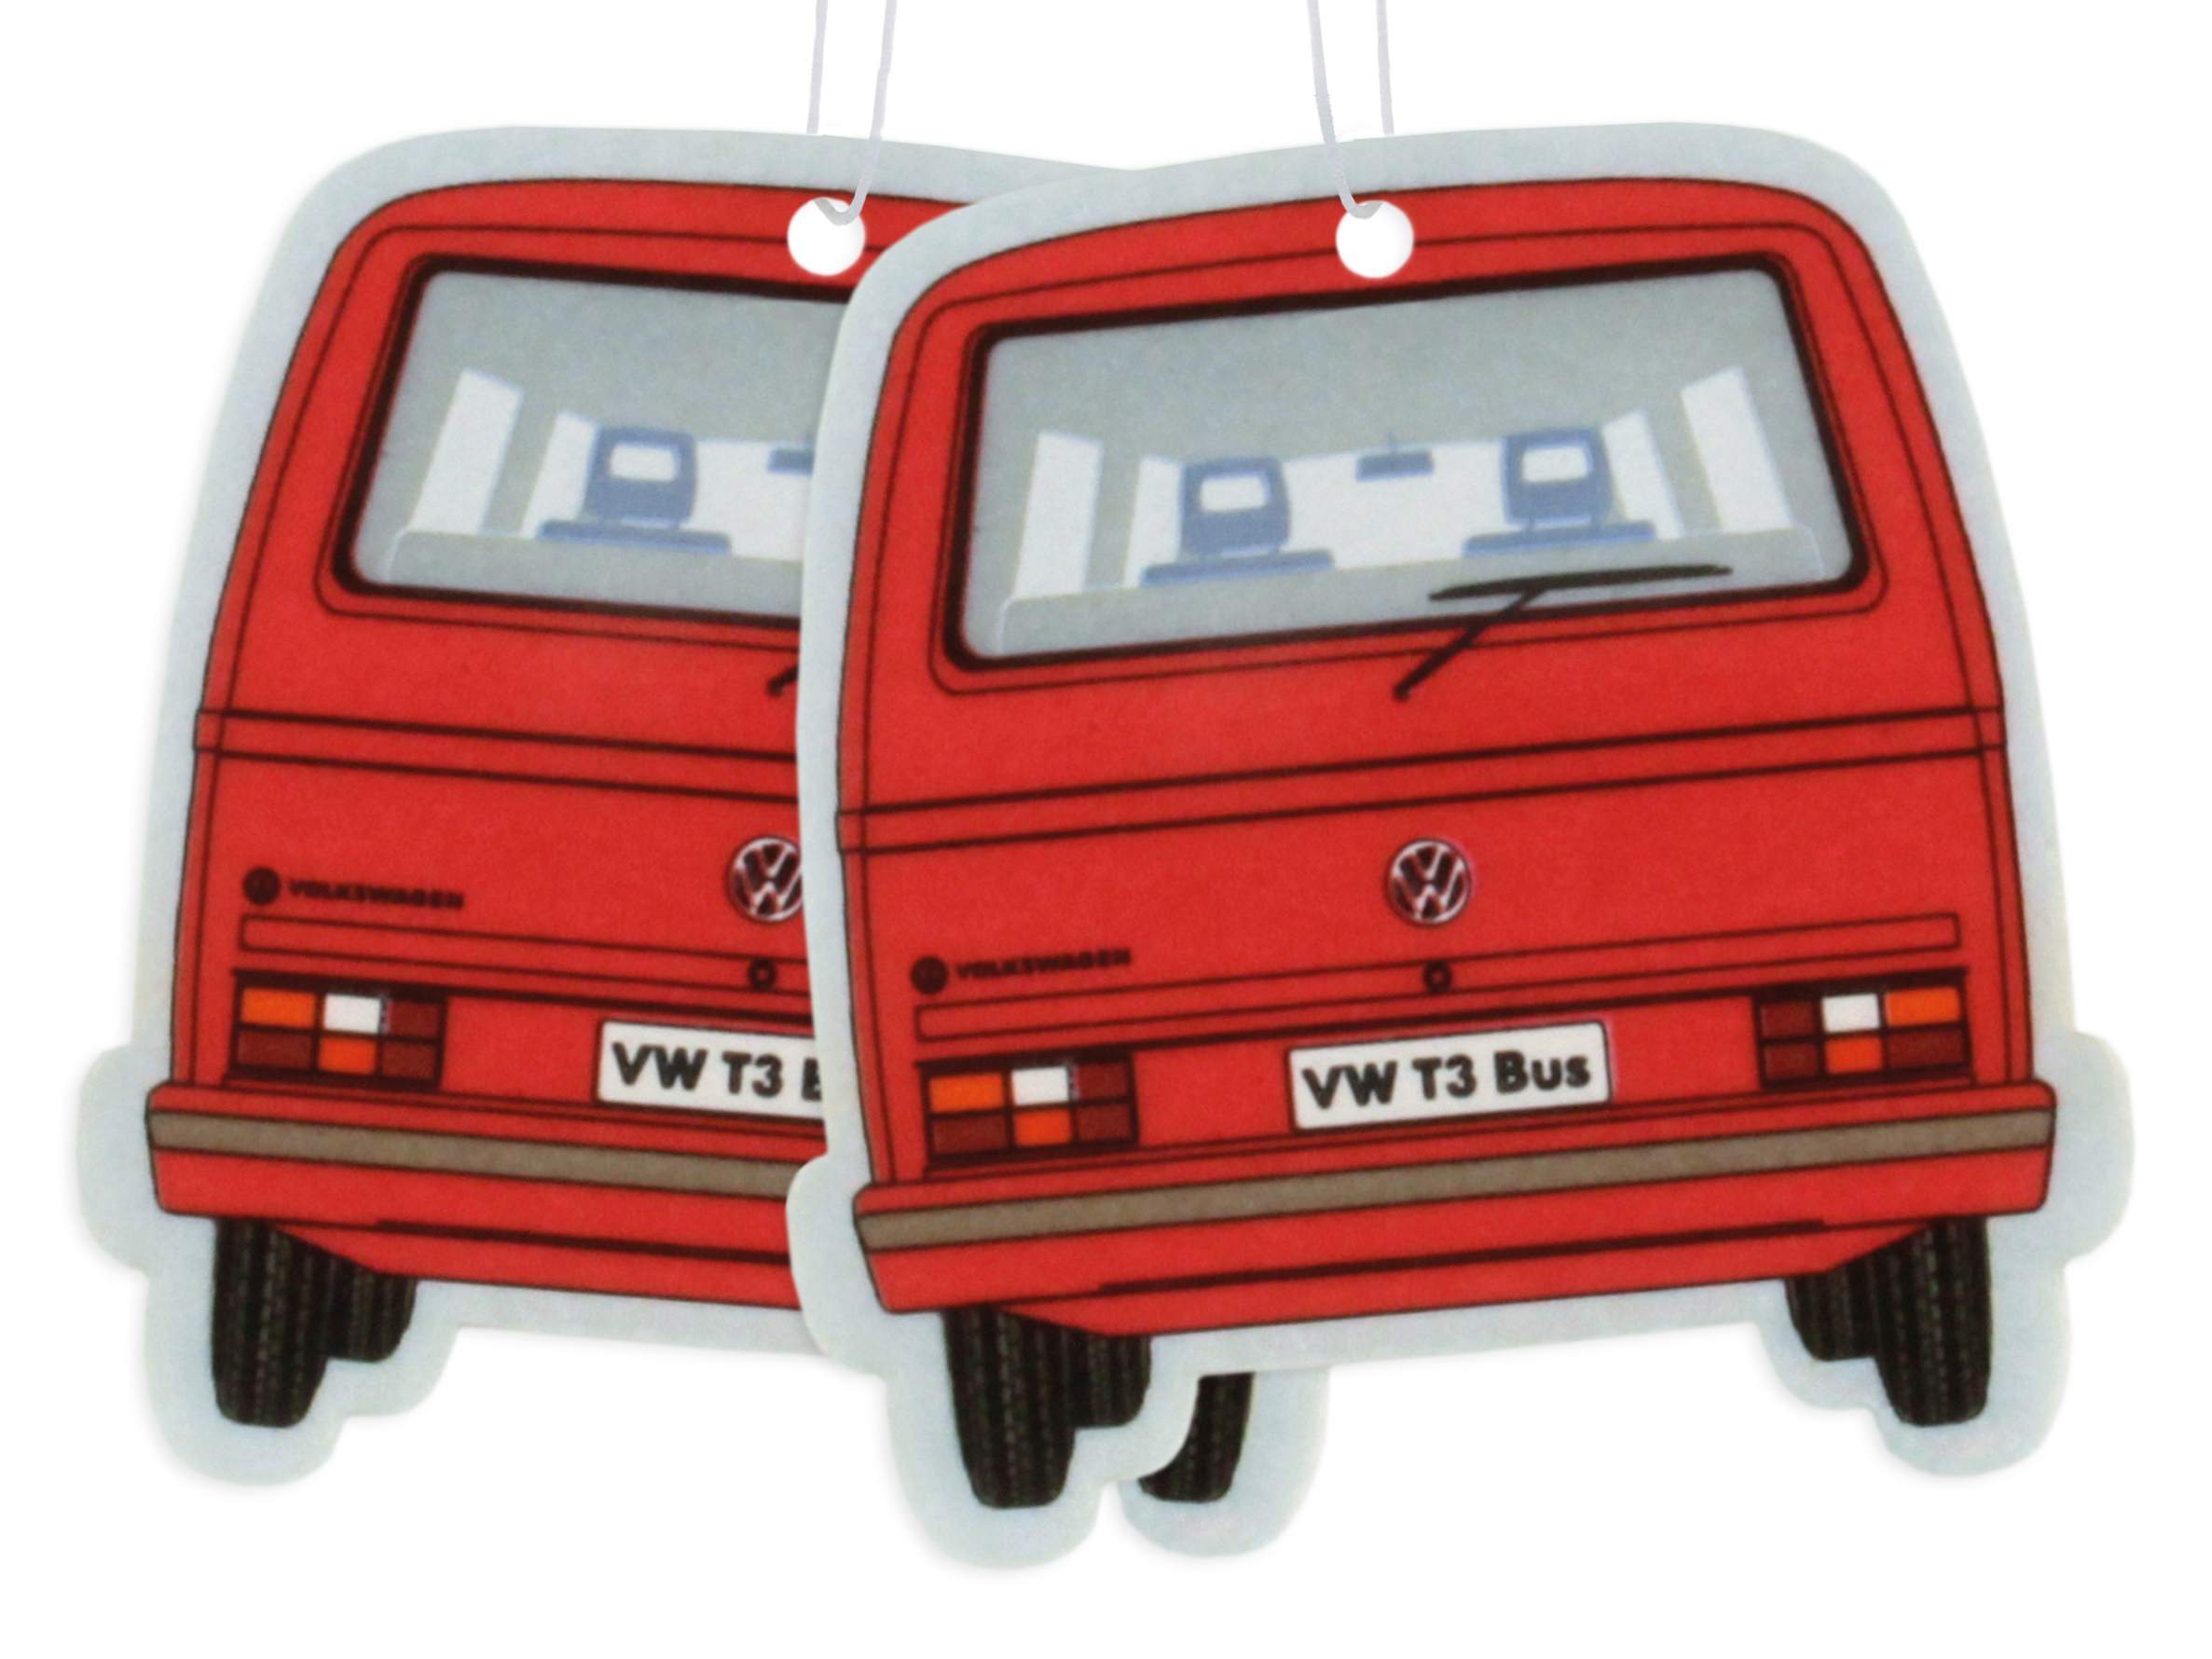 Set of 2 Volkswagen air fresheners - various designs